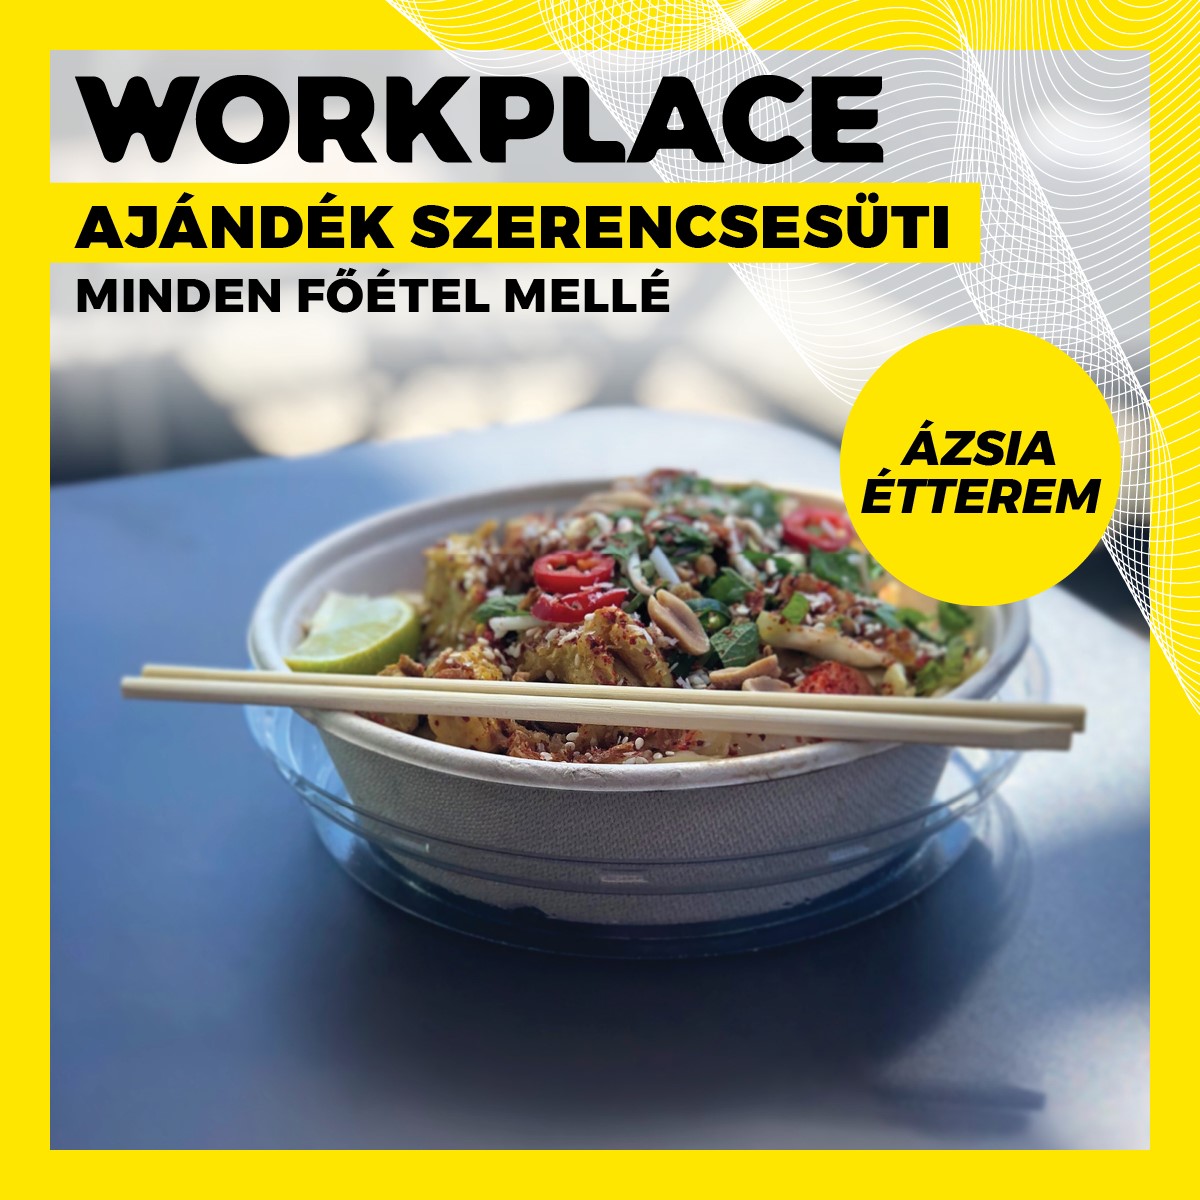 Keresd a Westend appban az Ázsia étterem Workplace kupont